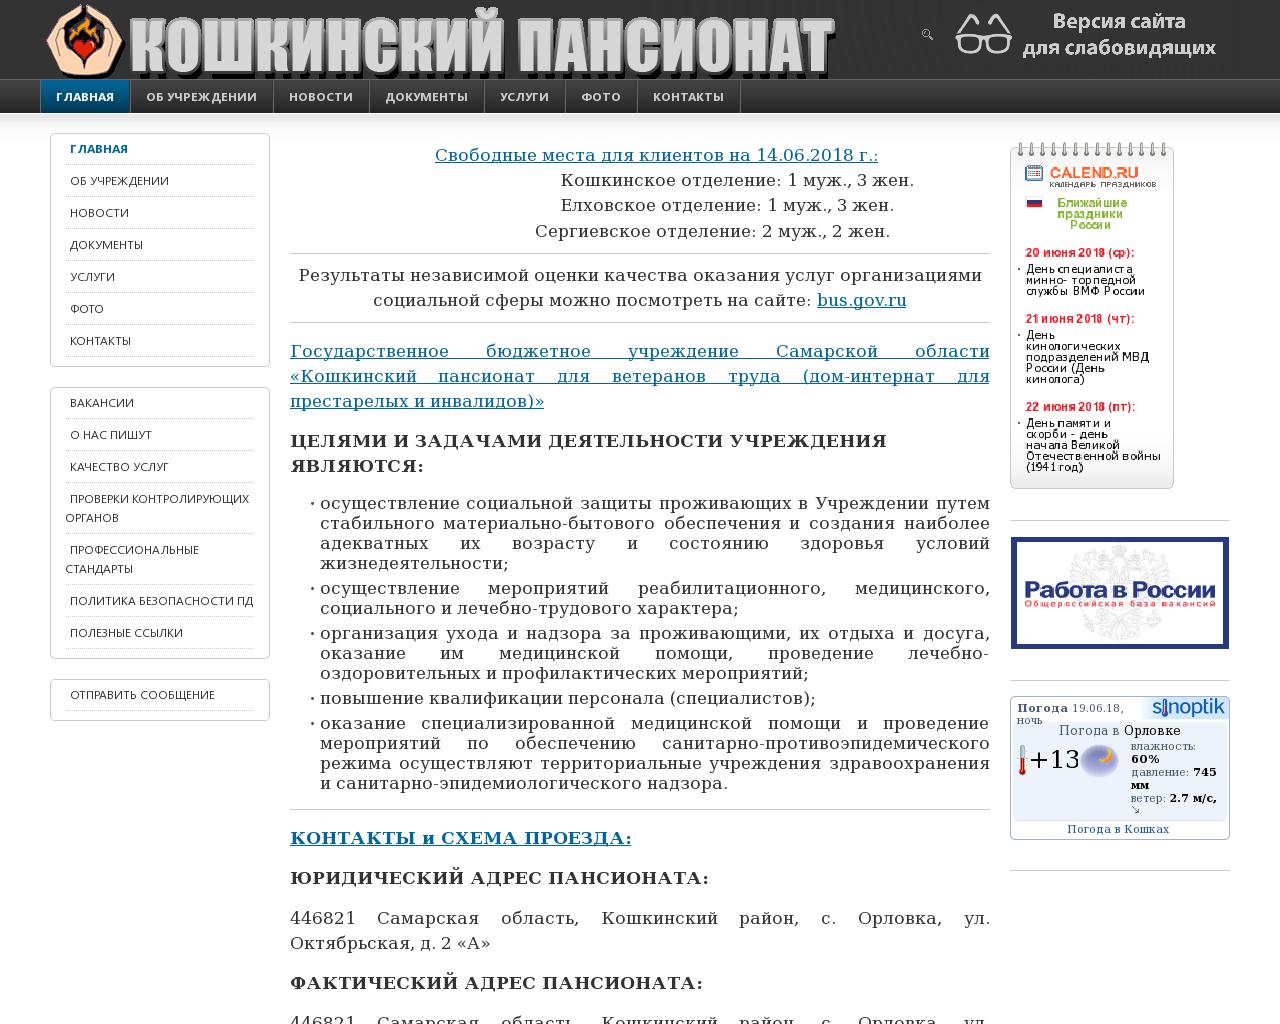 Изображение сайта koshpvt.ru в разрешении 1280x1024